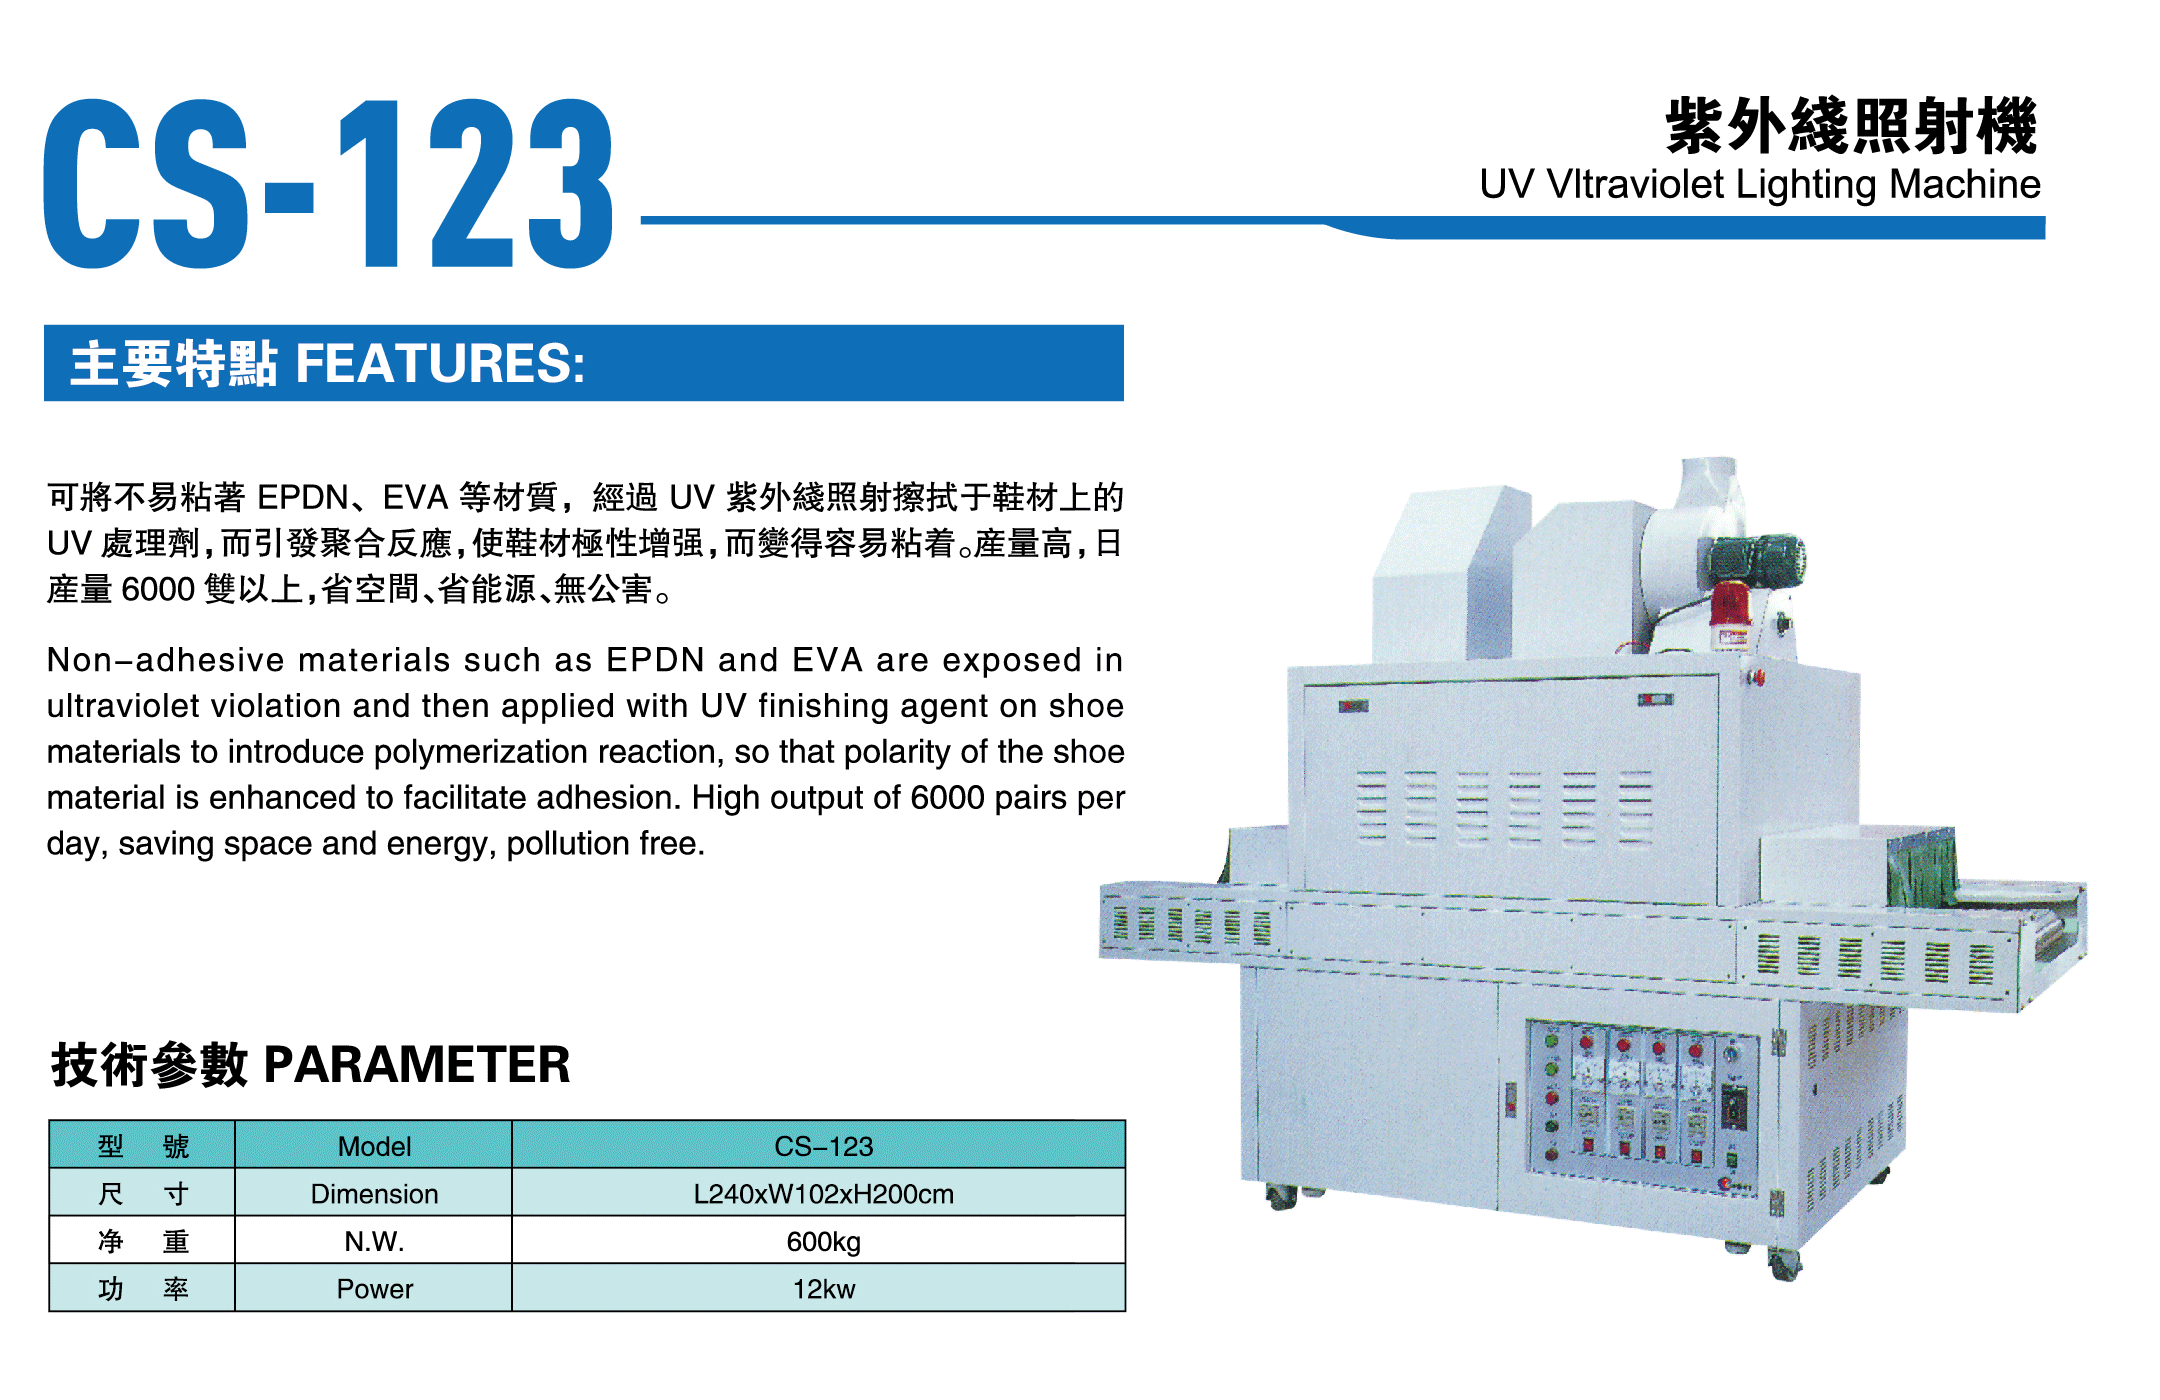 CS-123